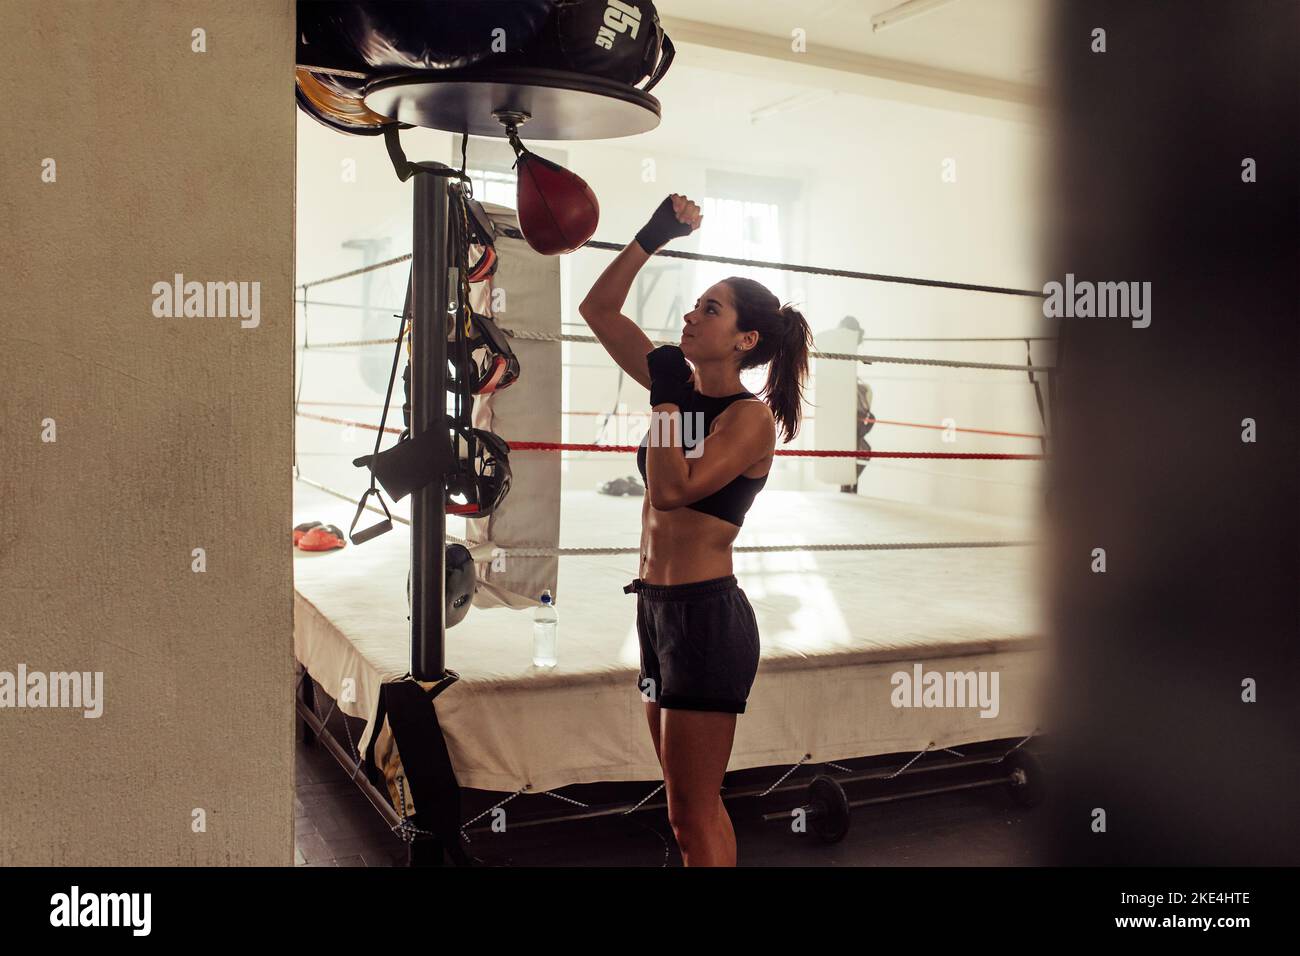 Weibliche Sportlerin trainiert mit einem kleinen Boxsack in einer Boxhalle. Boxerin, die in einem Fitness-Studio trainiert. Stockfoto